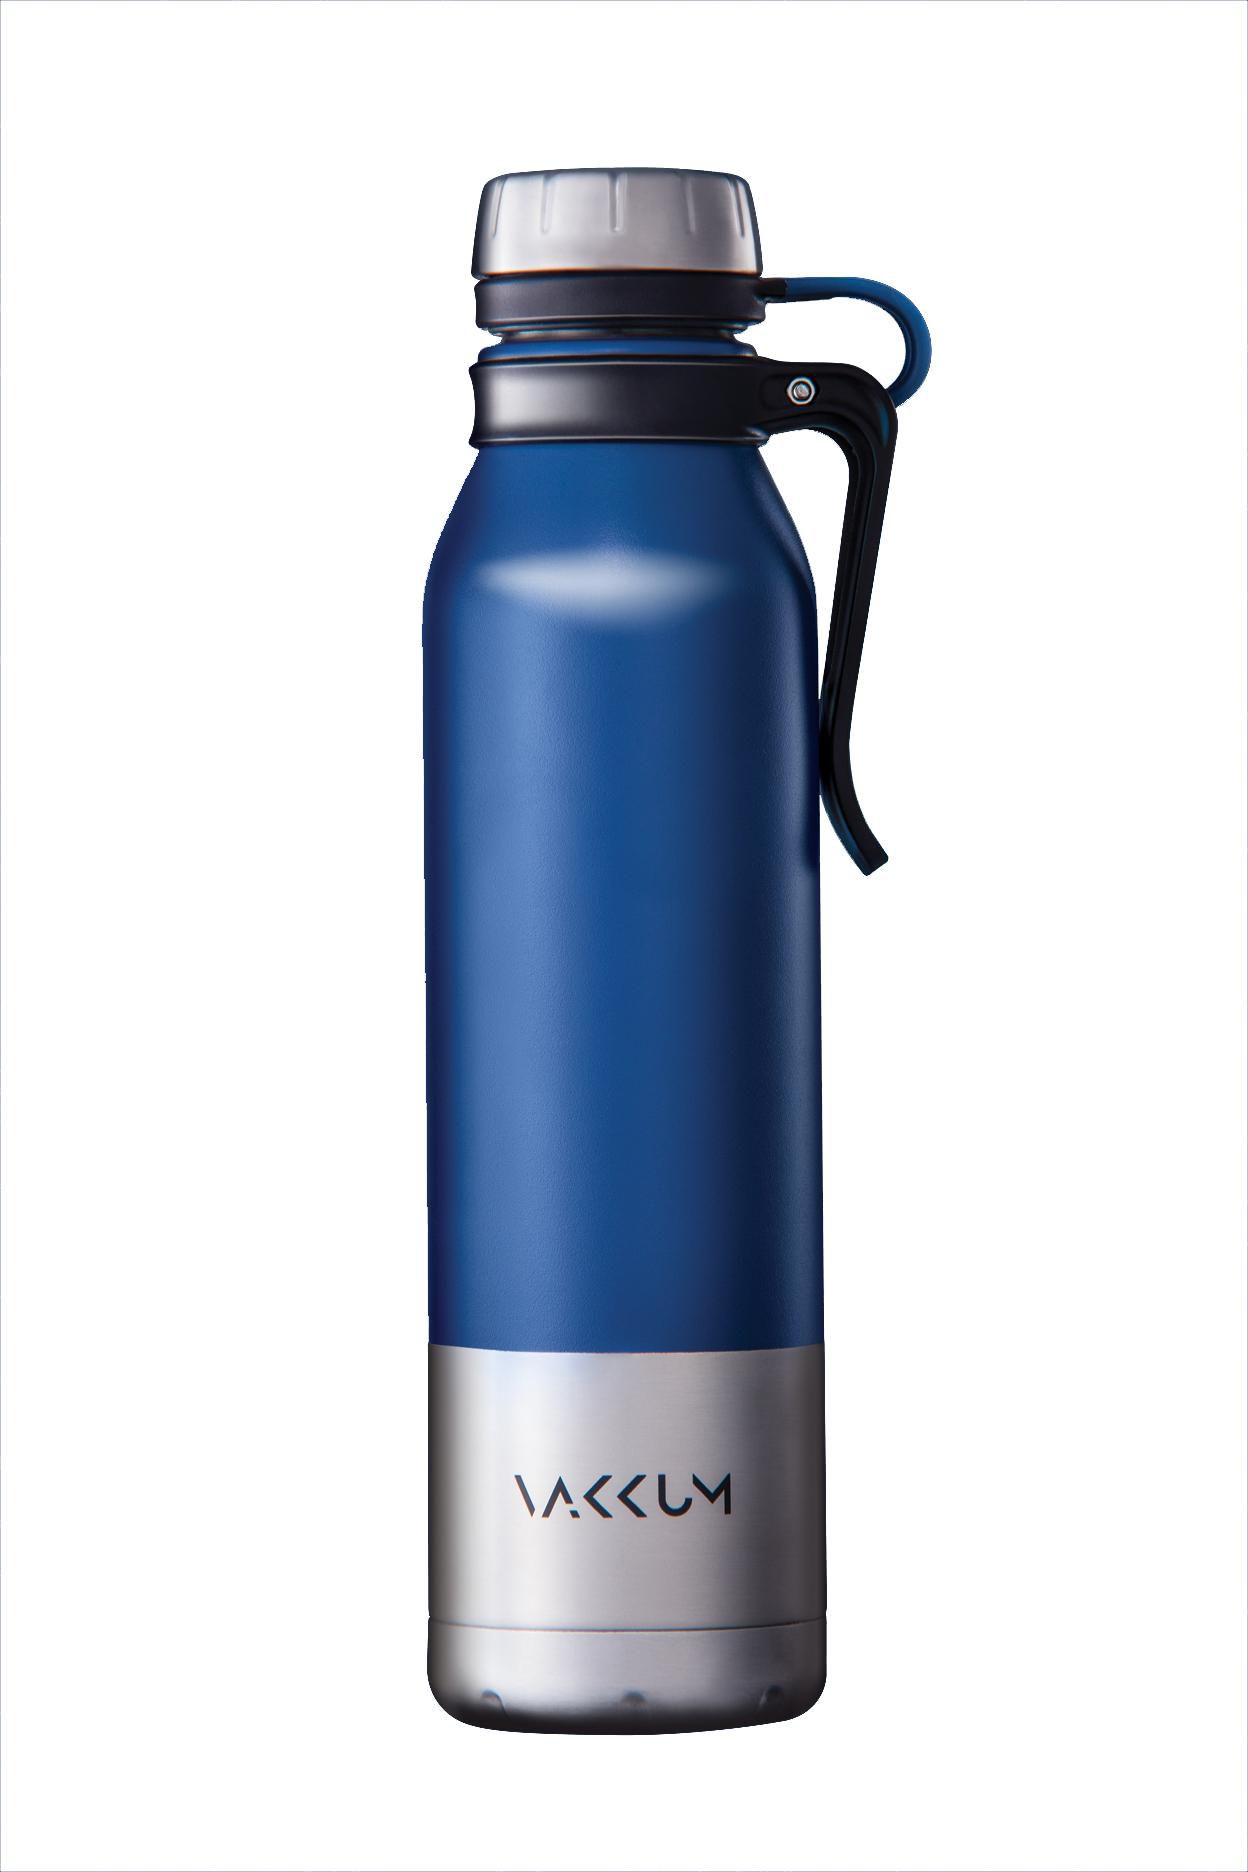 Anti-Bacterial Vakkum Starke Flask Stainless Steel Bottle 750ml (Blue)